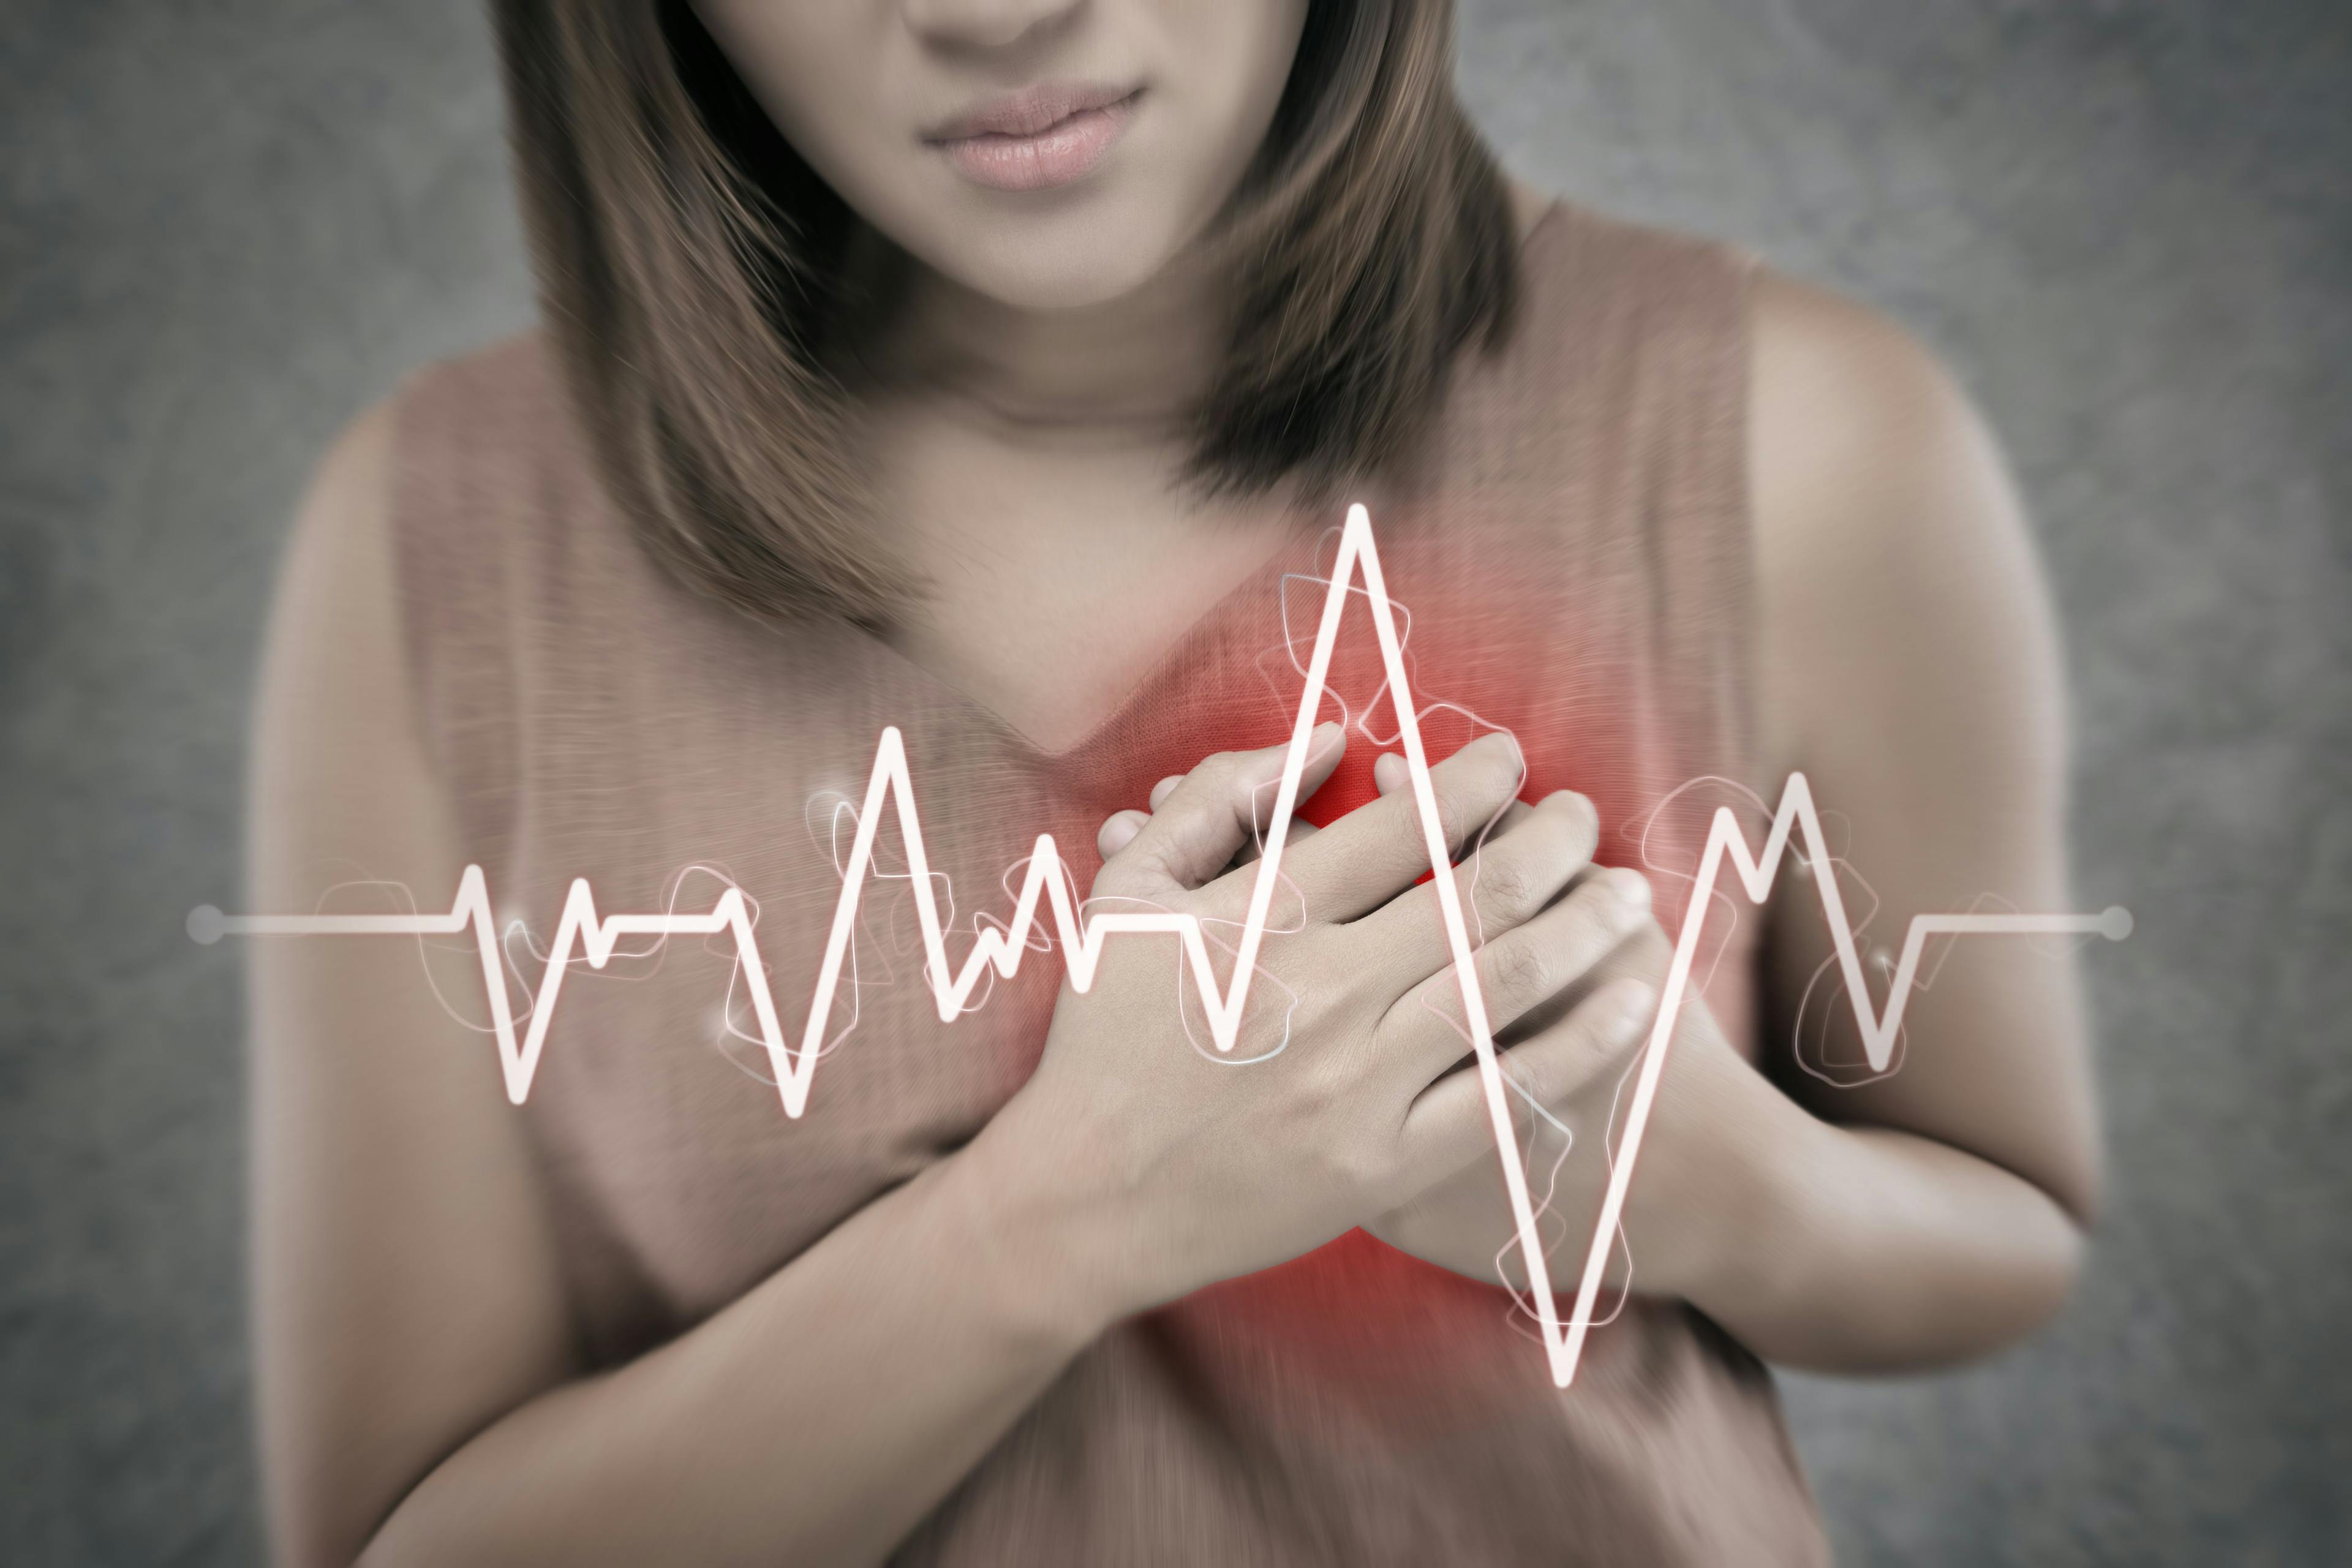 Premenopausal CVD may mean menopause at an early age